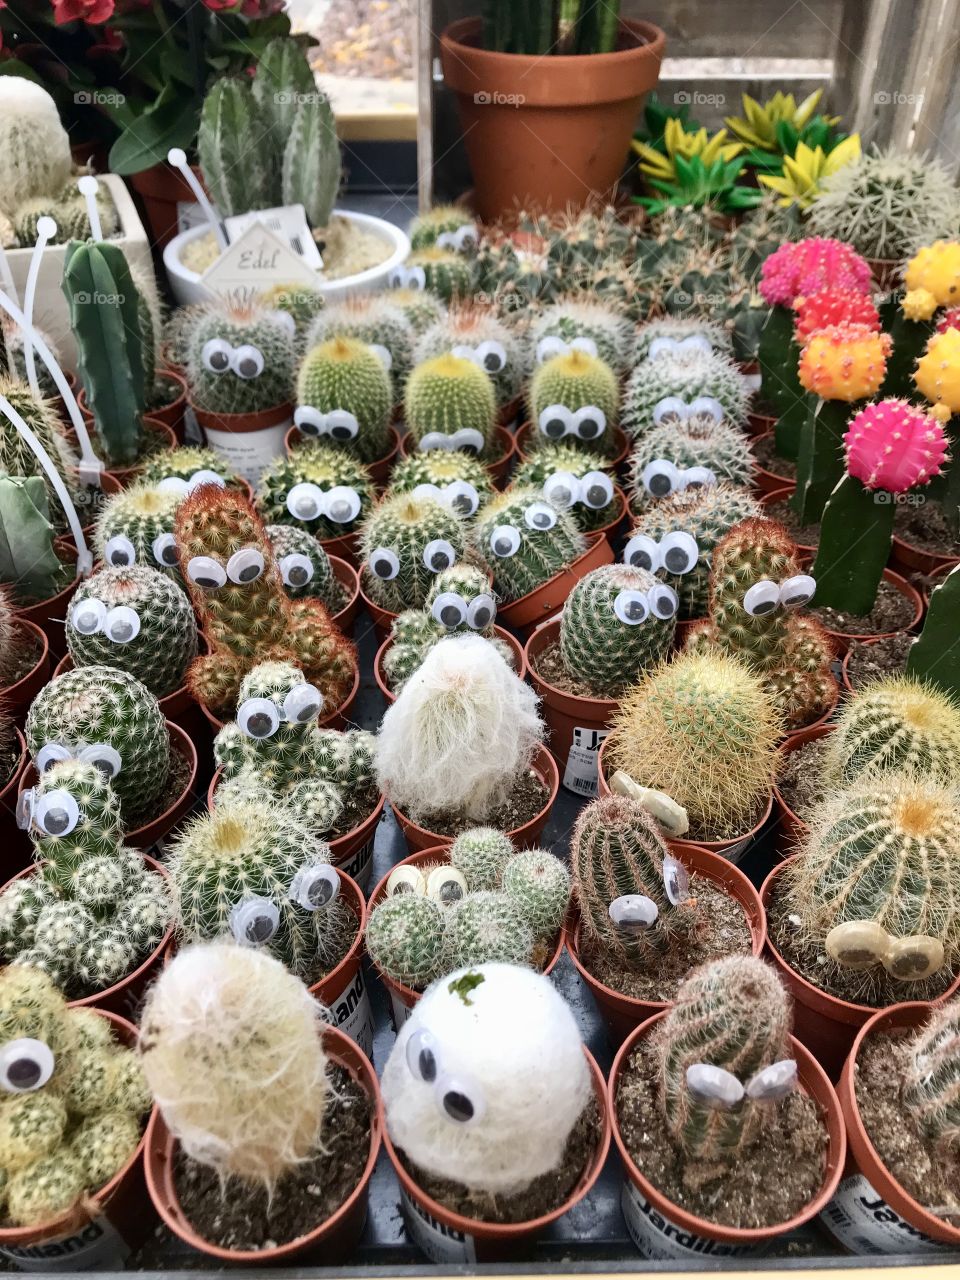 Cactus mini